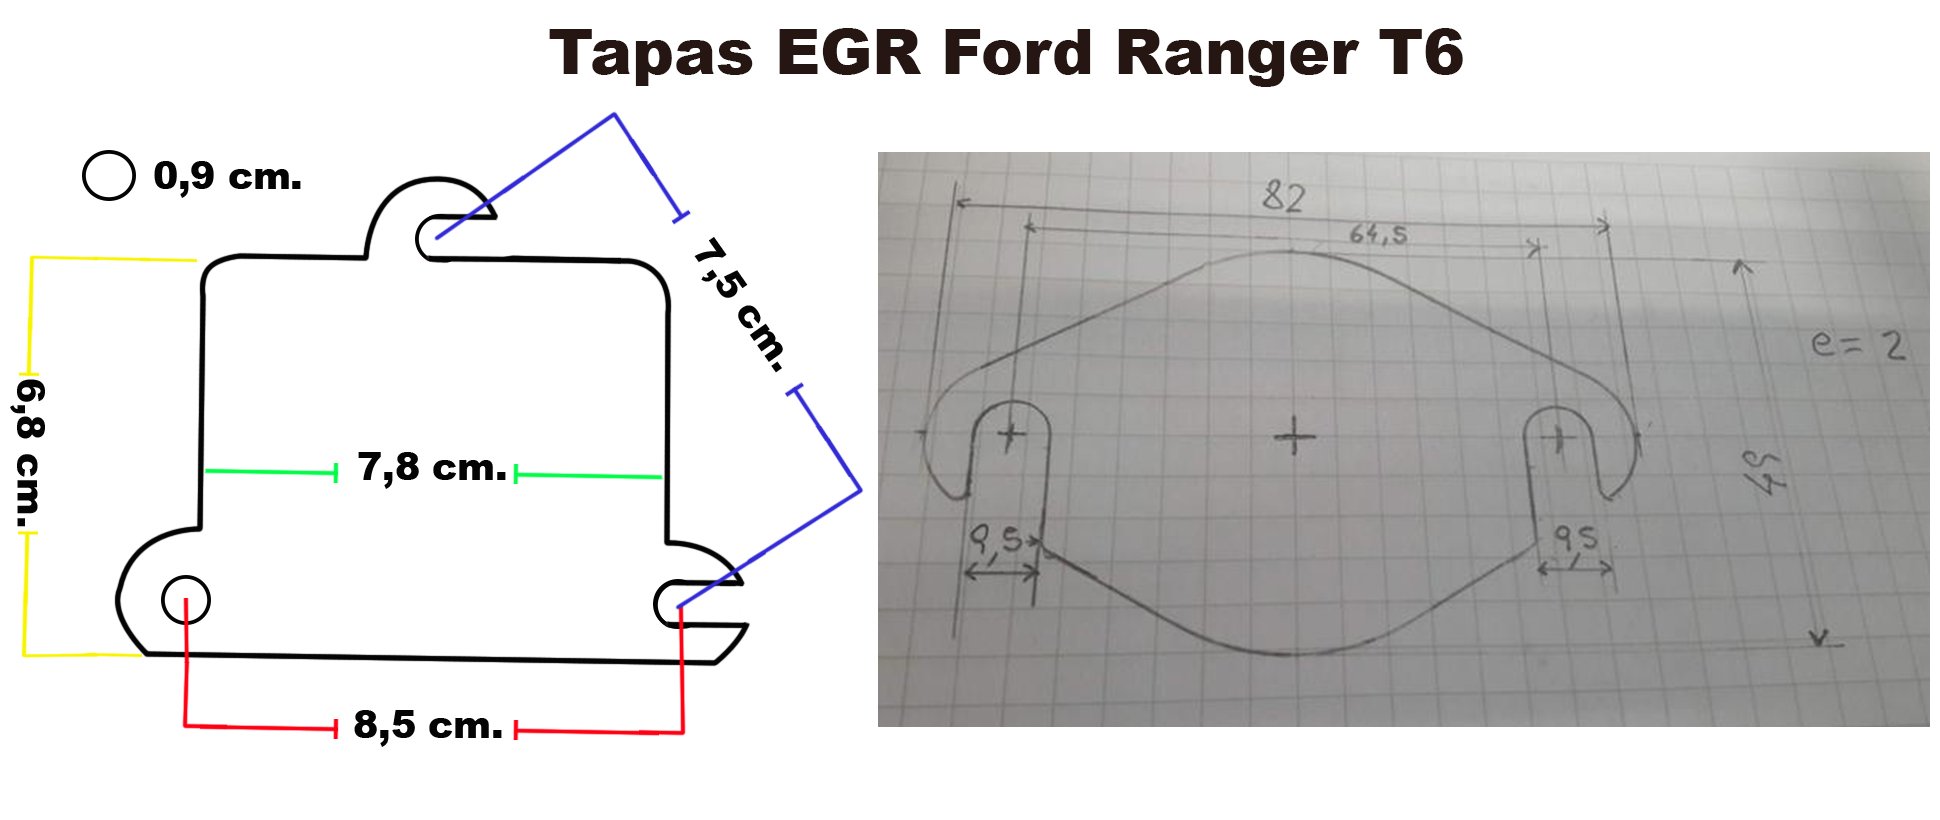 Tapar EGR - :: Foro de Mensajes del Club Ranger 4x4 